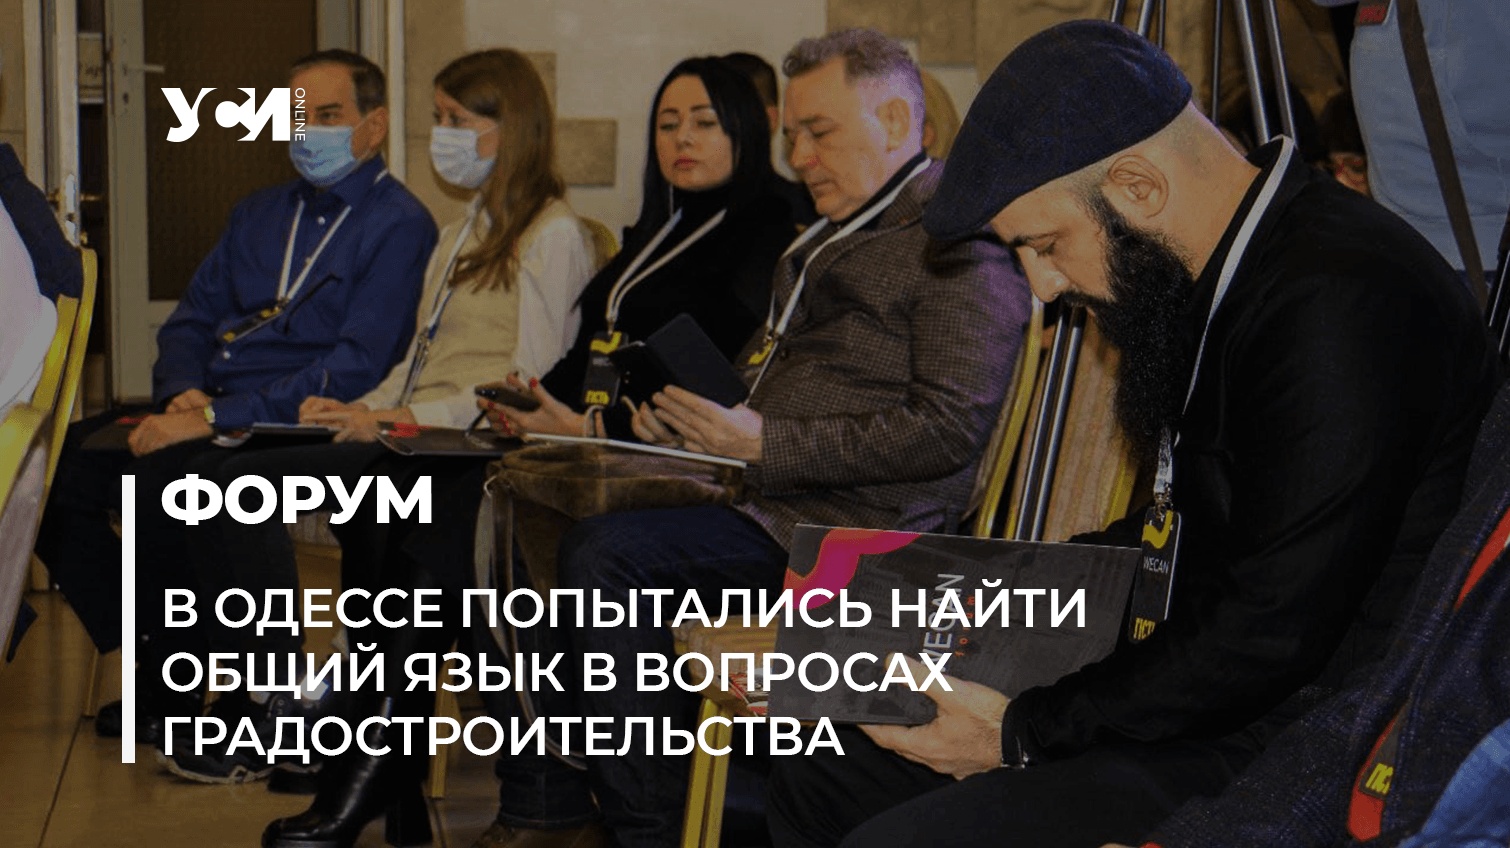 Нужен общественный договор, – в Одессе обсудили застройку города (фото) «фото»